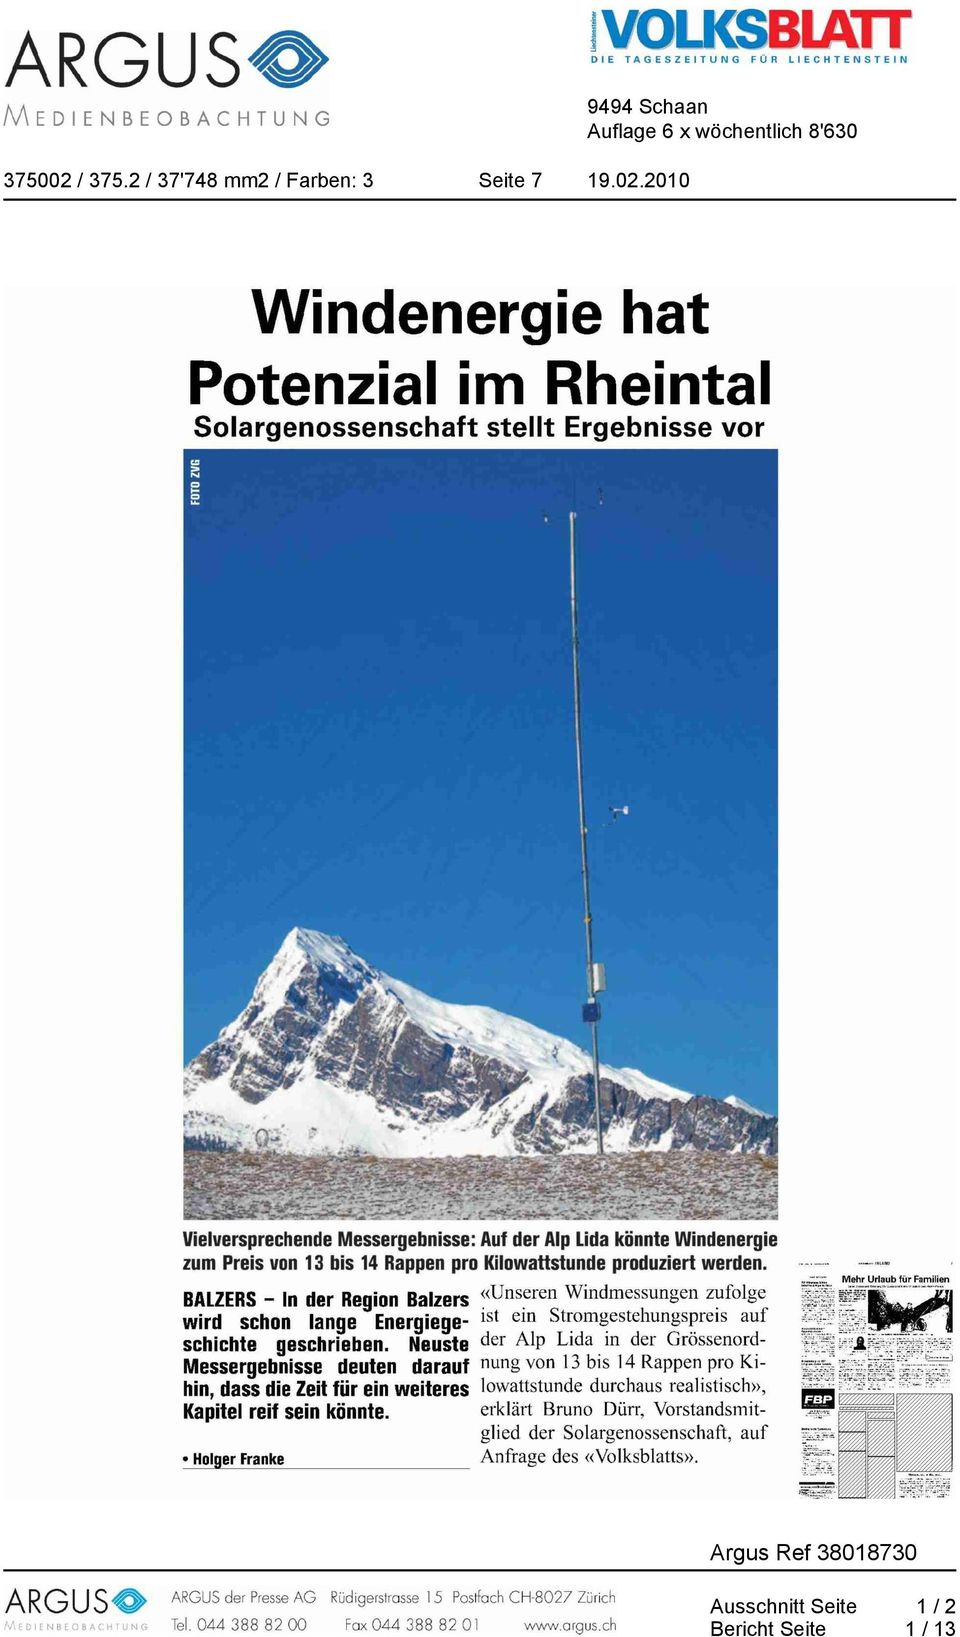 2010 Windenergie hat Potenzial im Rheintal Solargenossenschaft stellt Ergebnisse vor Ilielversprechende Messergebnisse: Auf der Alp Lida könnte Windenergie zum Preis von 13 bis 14 Rappen pro